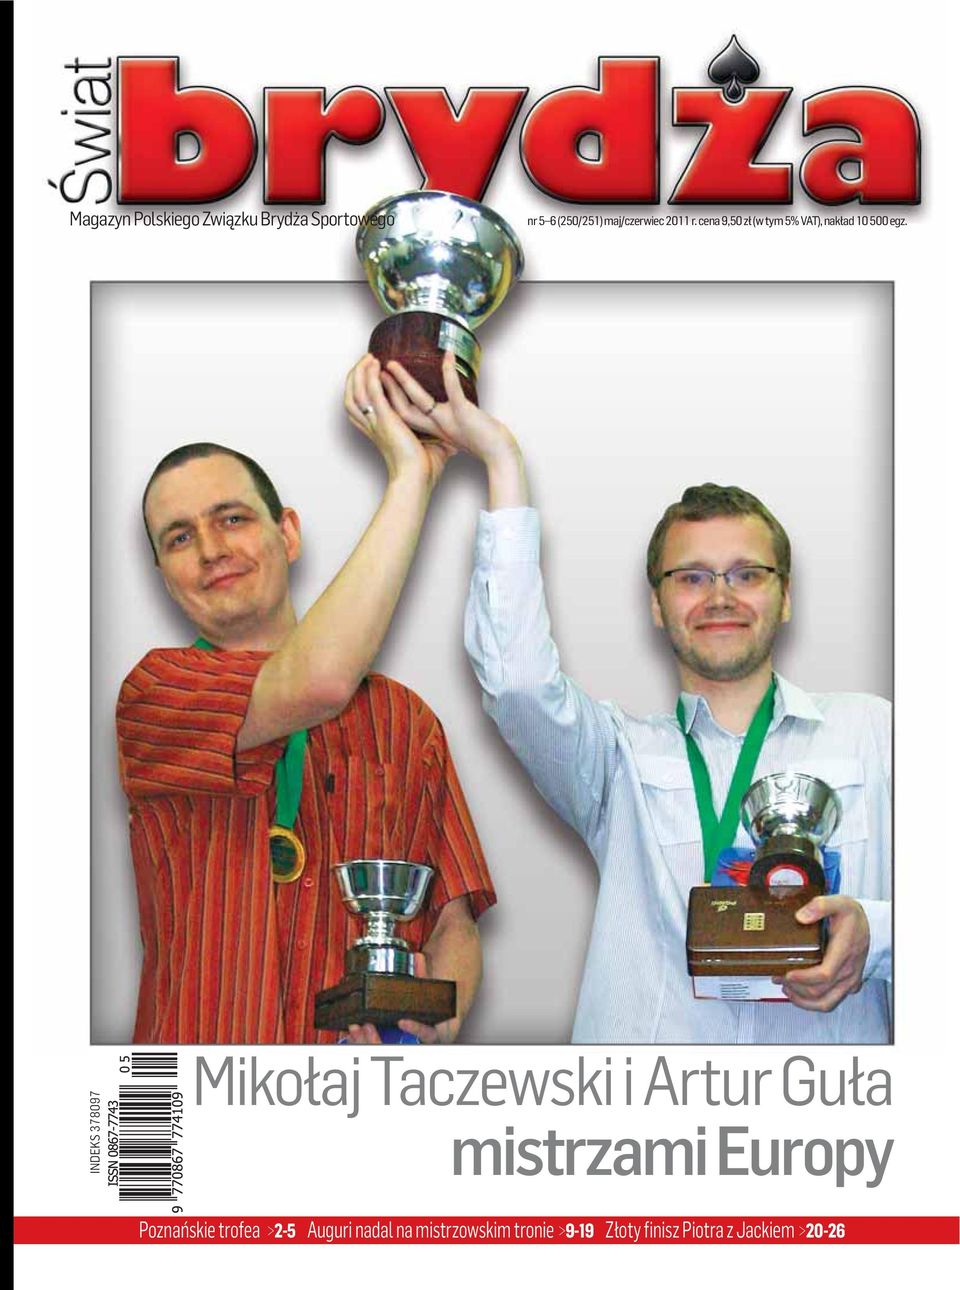 INDEKS 378097 Mikołaj Taczewski i Artur Guła mistrzami Europy